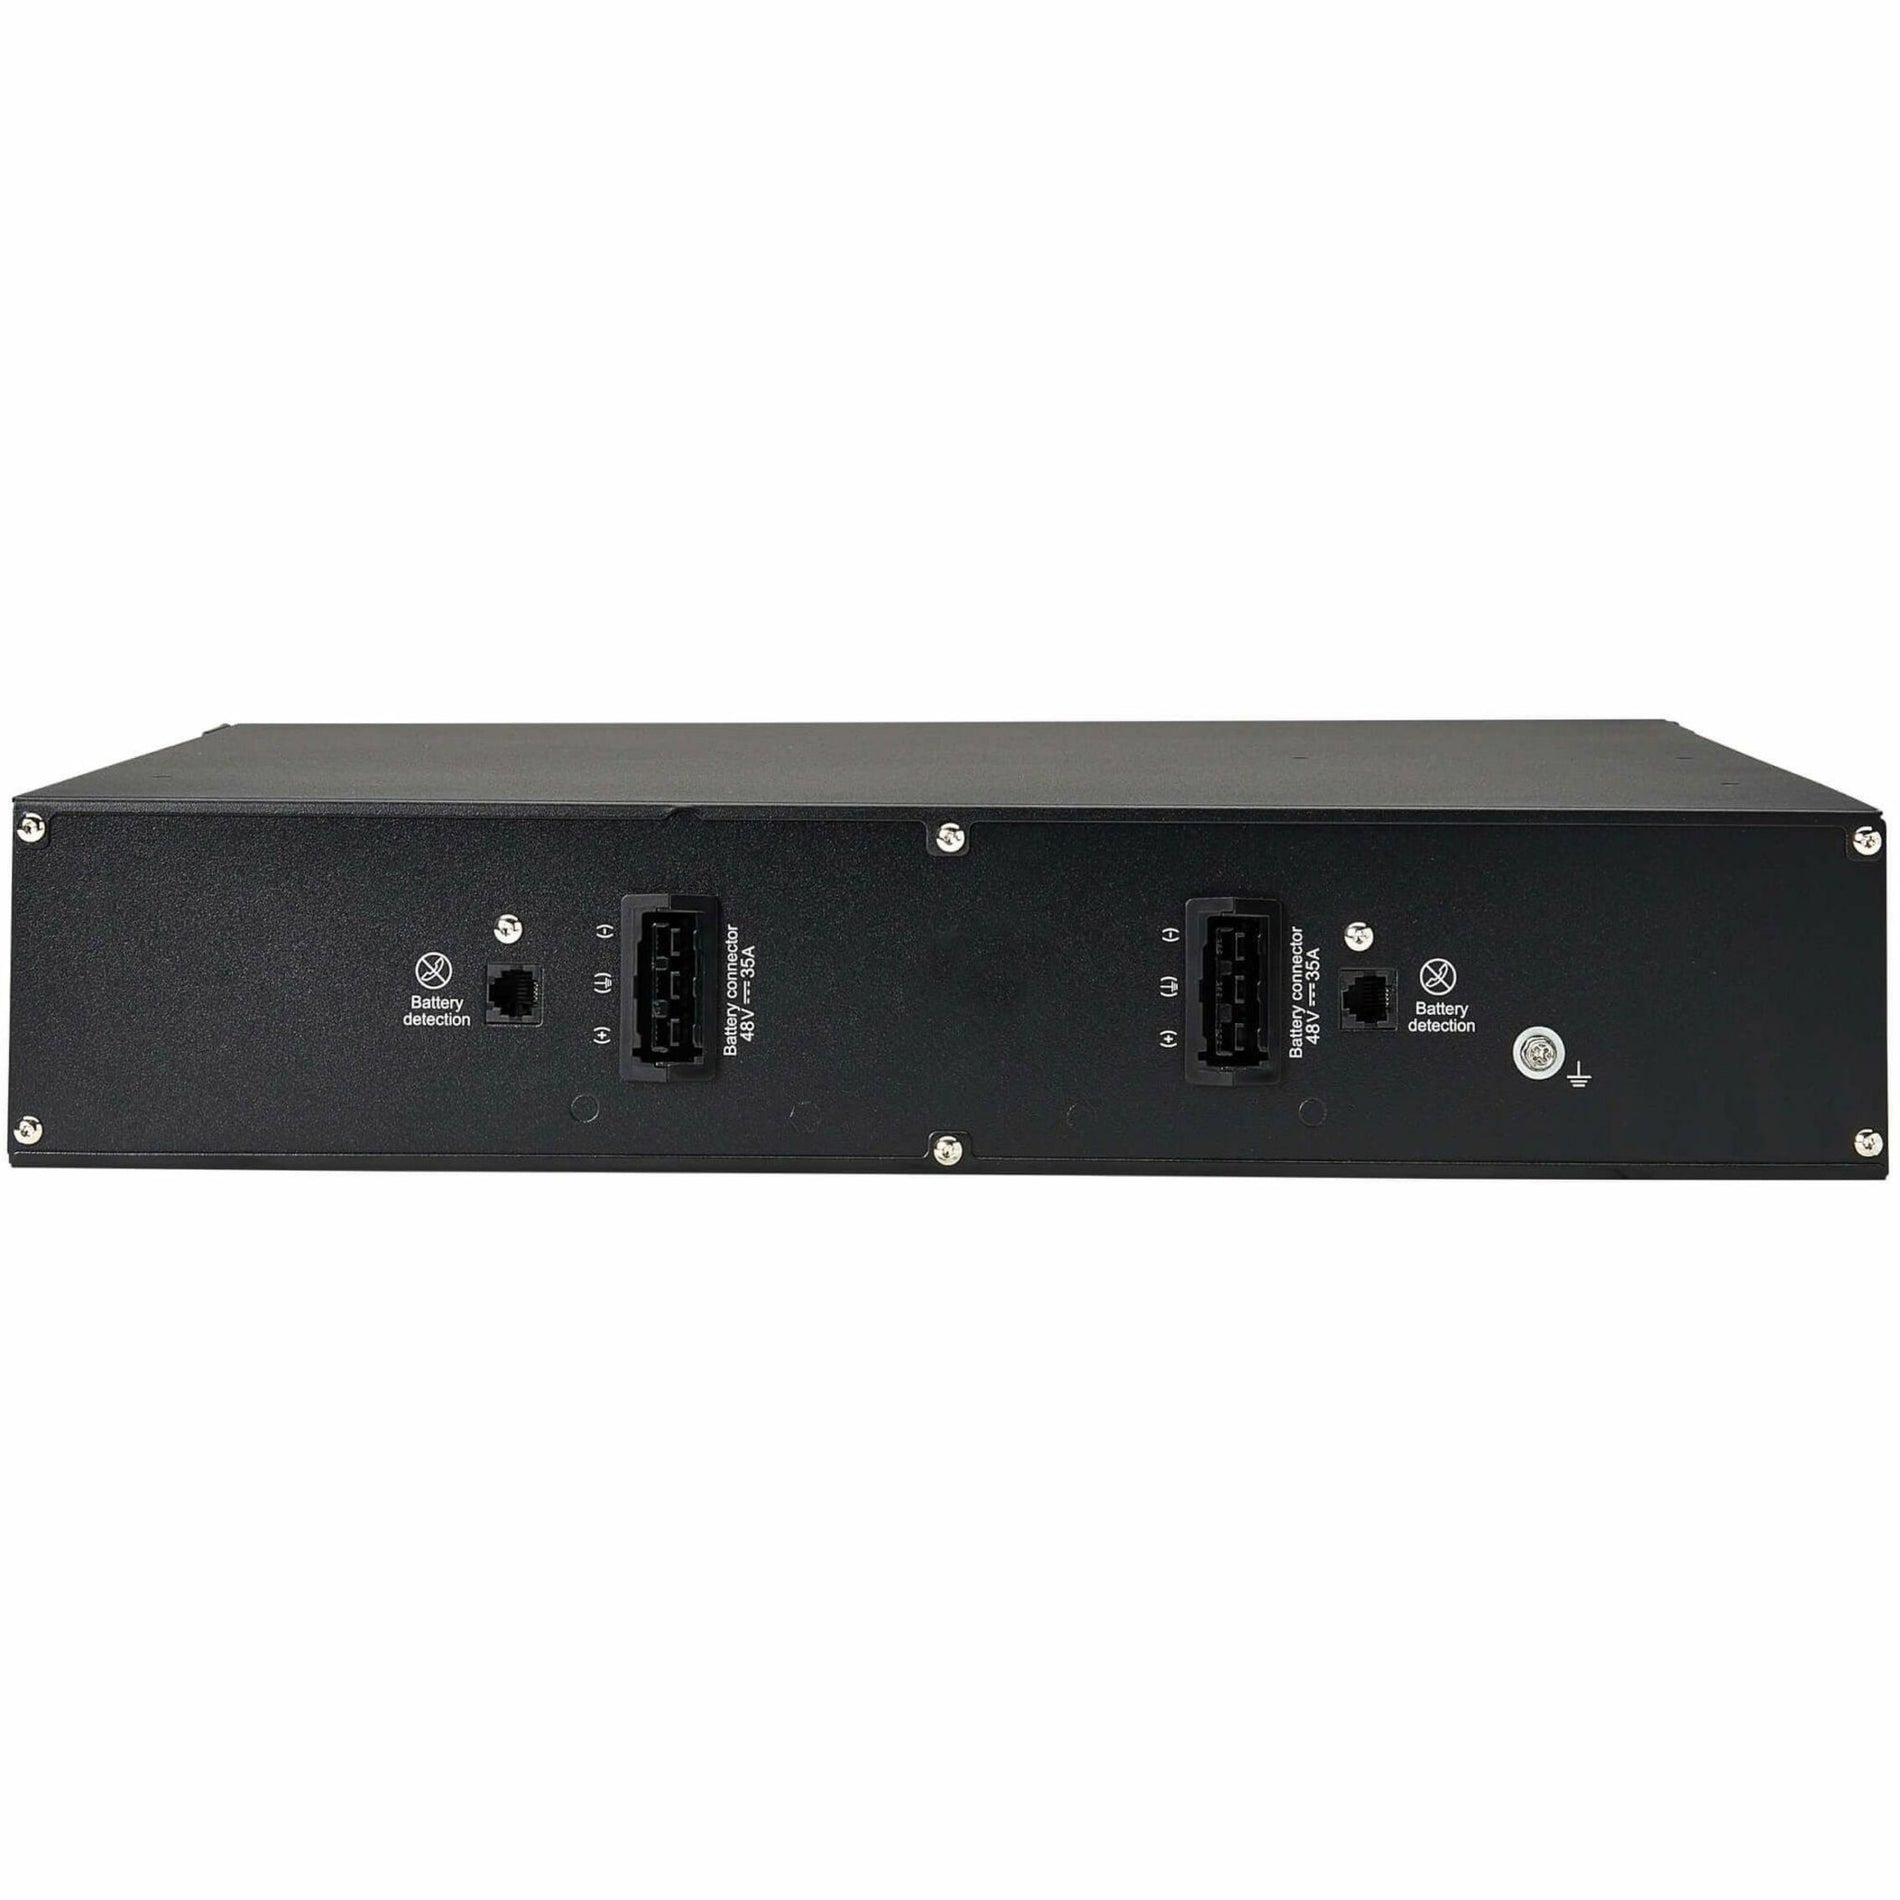 特利普利 BP48RT 48V 扩展电池模块（EBM）SmartOnline UPS 系统，2U 机架/塔 品牌名称：特利普利 特利普利